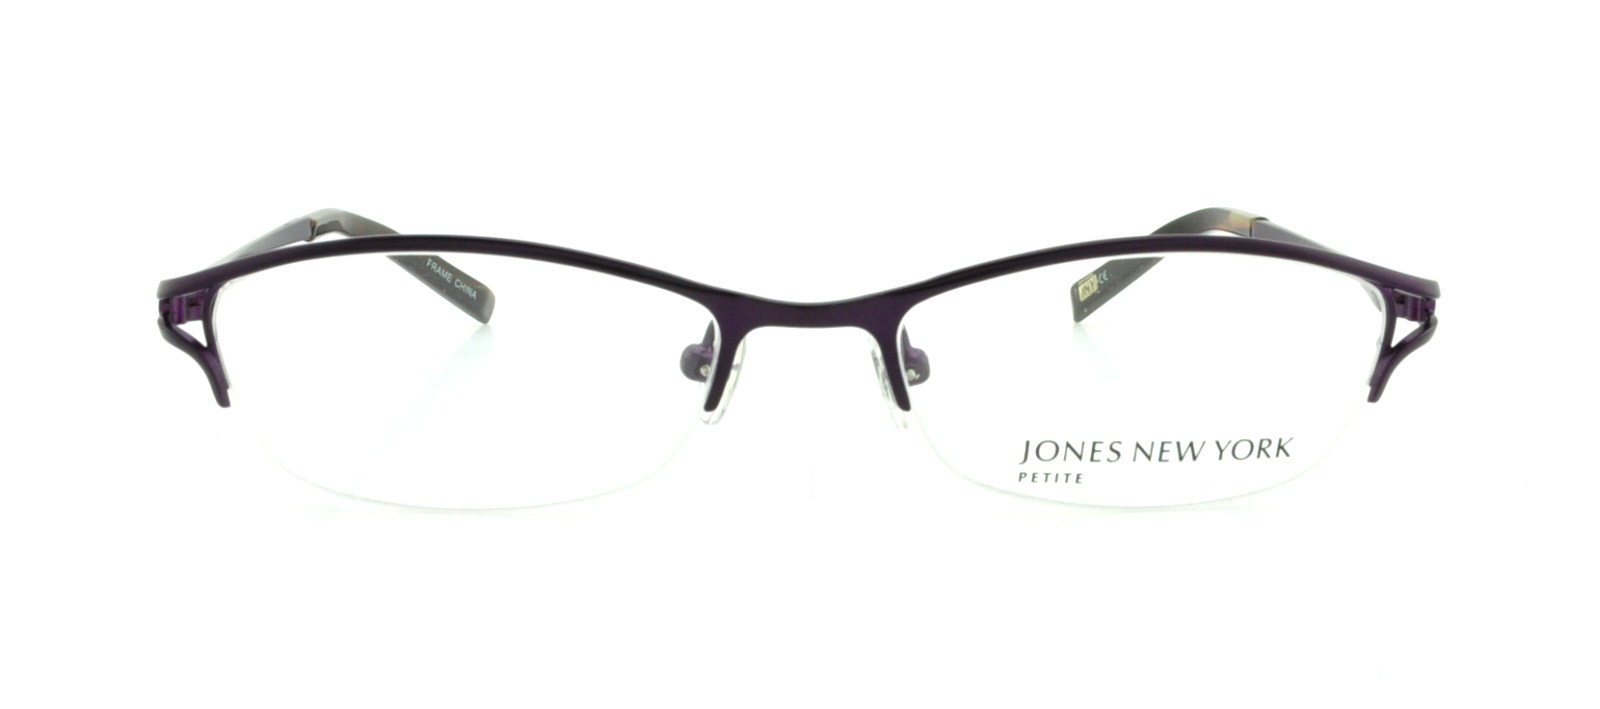 Designer Frames Outlet. Jones New York Eyeglasses J129